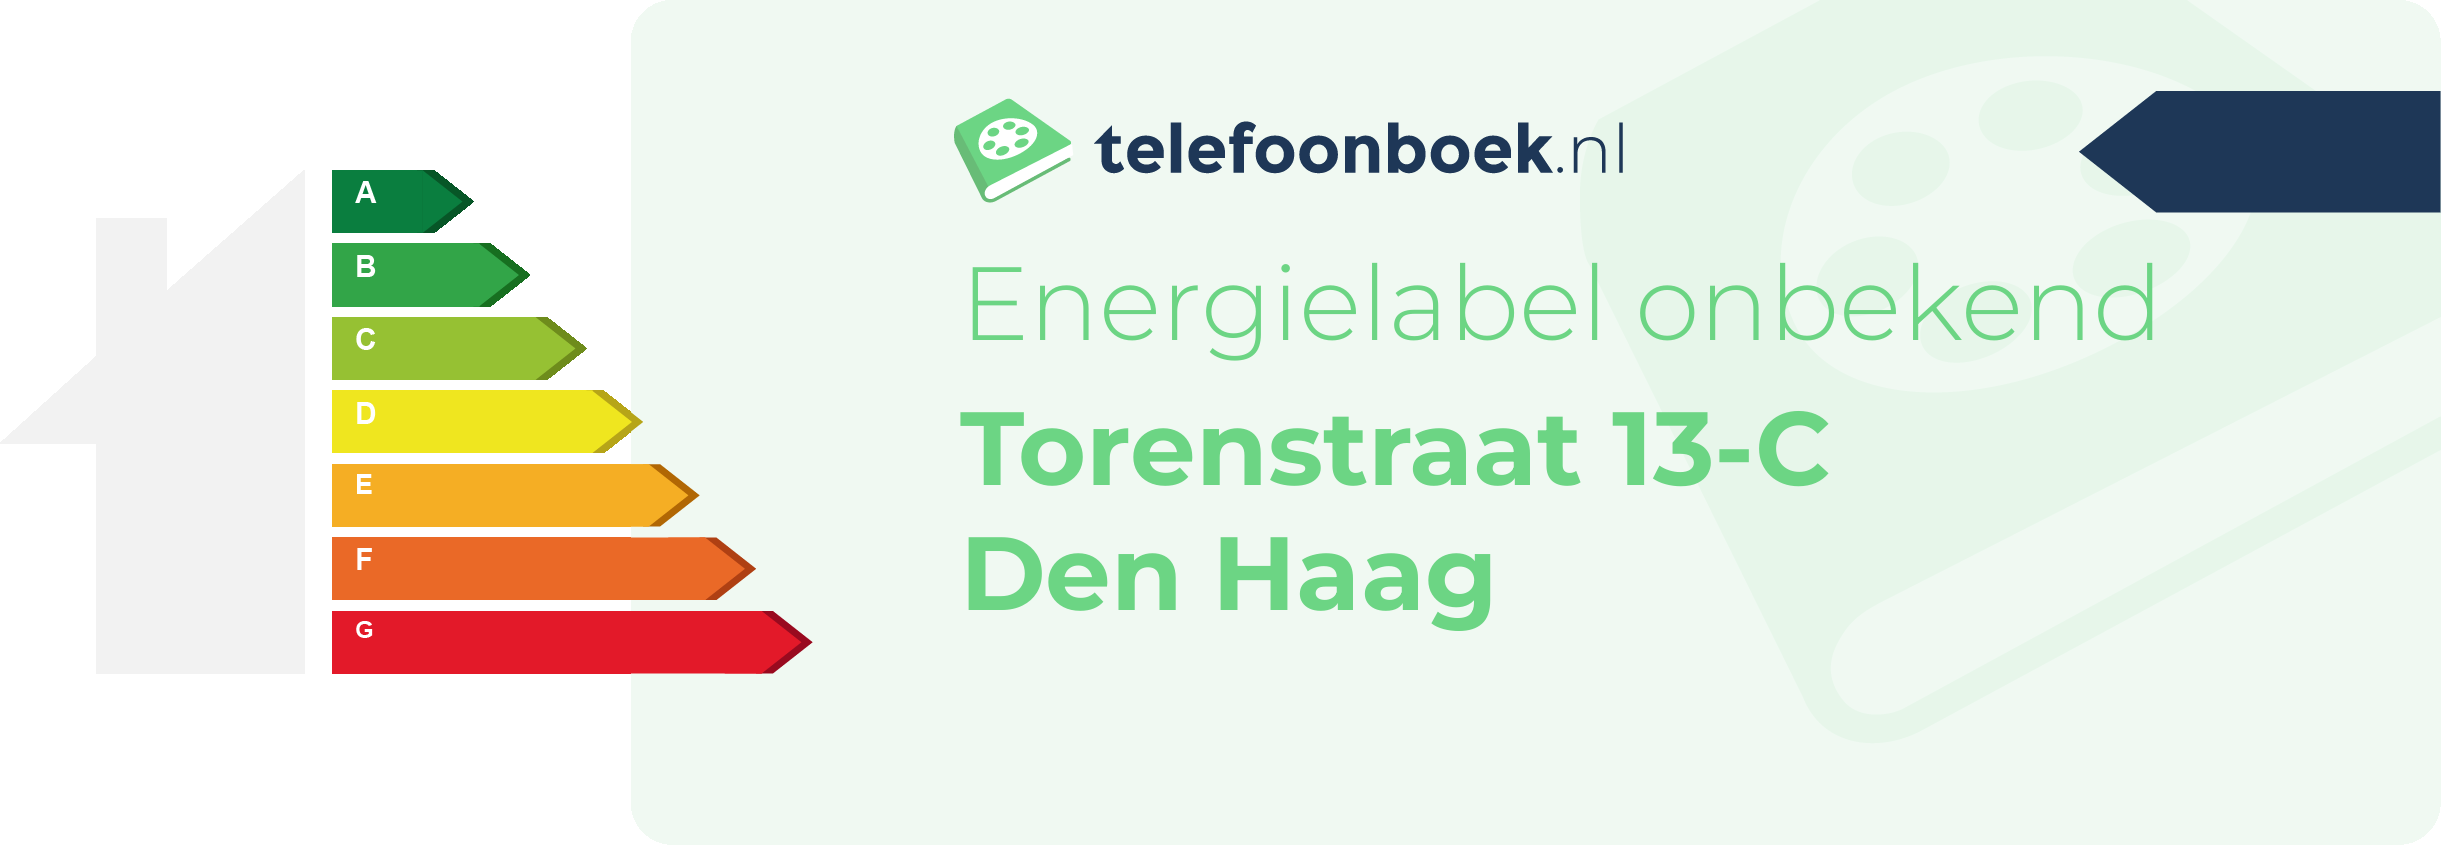 Energielabel Torenstraat 13-C Den Haag